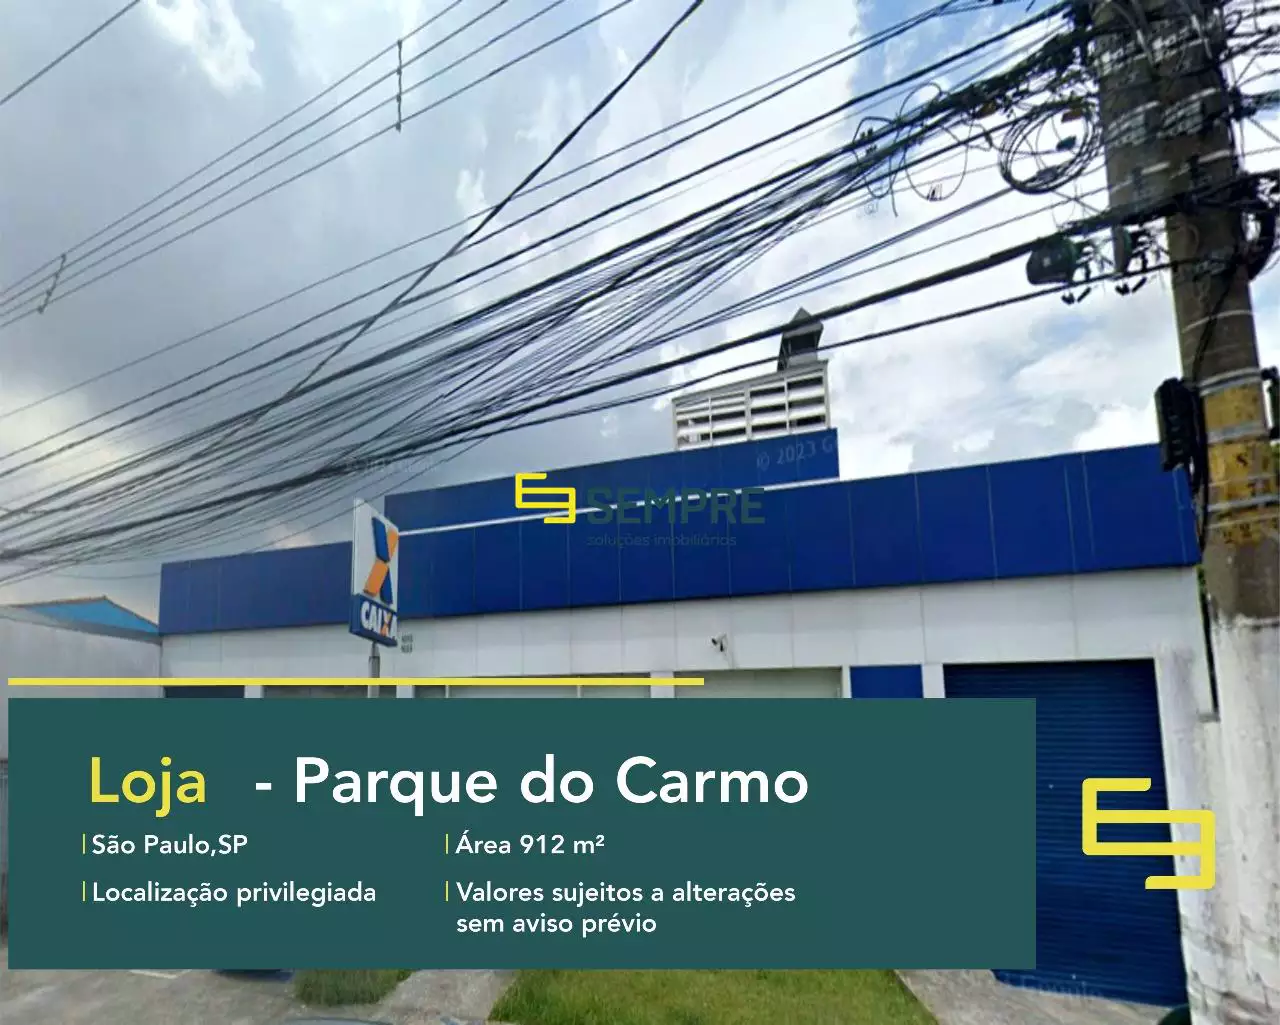 Loja para alugar em São Paulo no Parque do Carmo, em excelente localização. O estabelecimento comercial conta com área de 912 m².